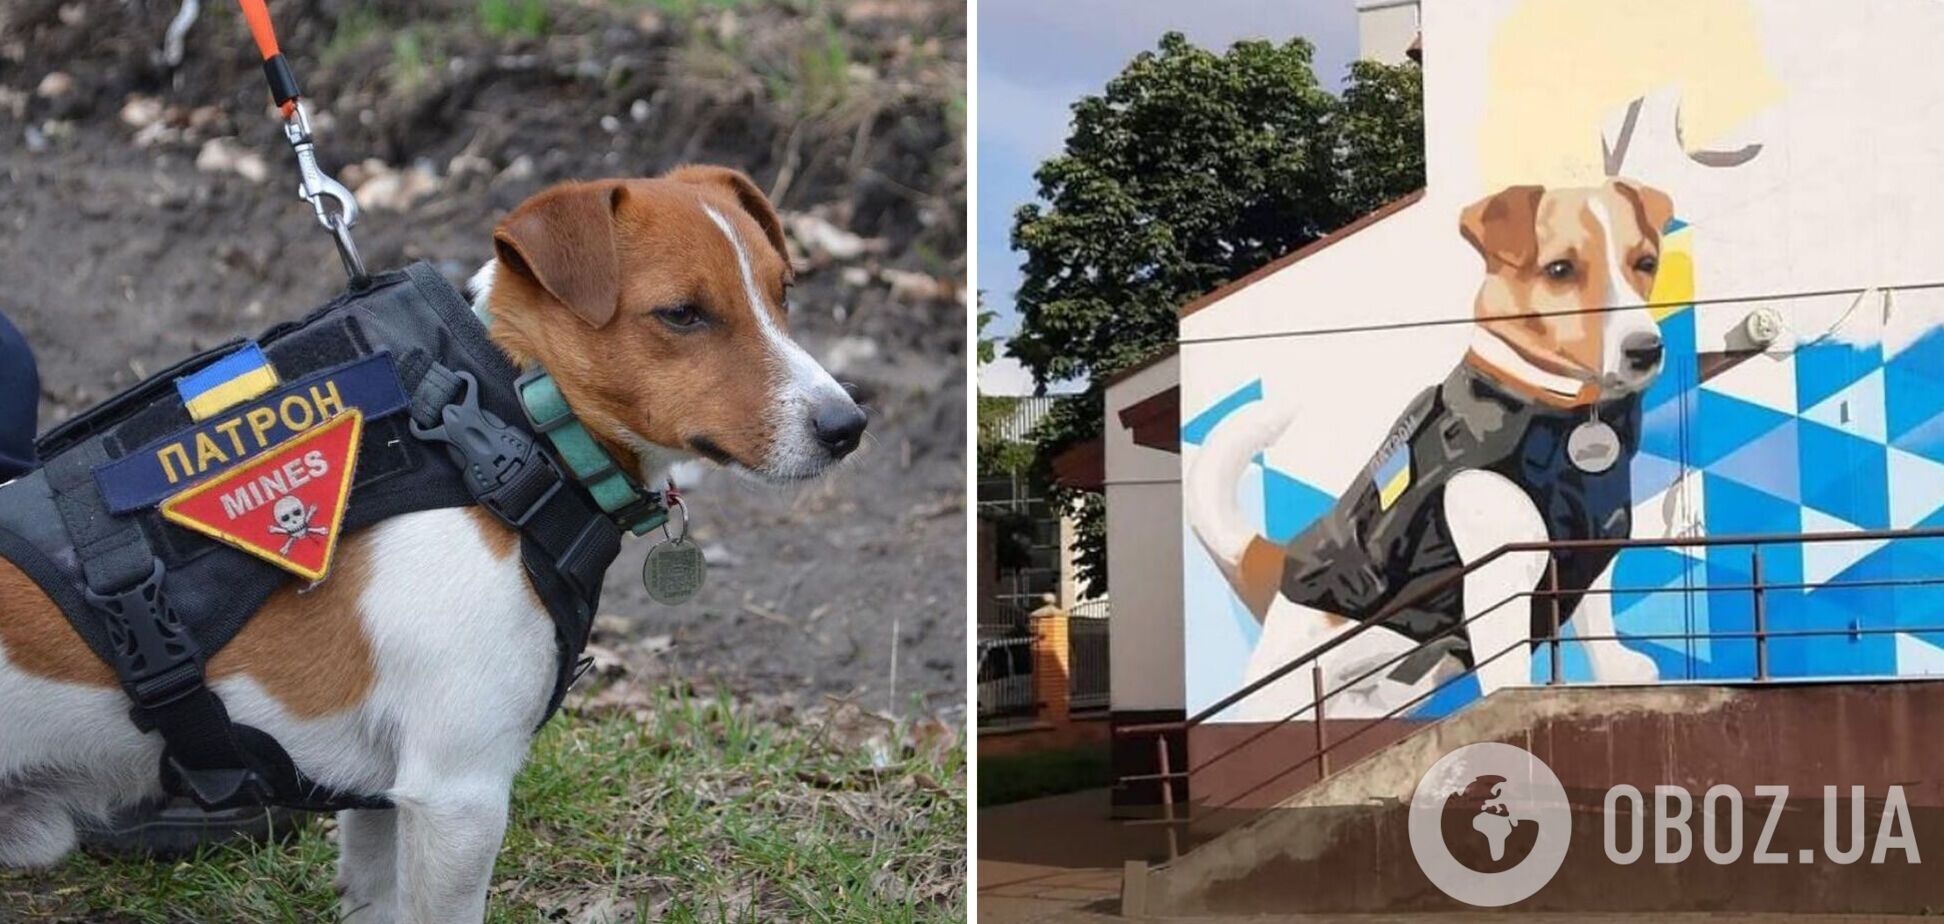 У Києві з'явився мурал, присвячений псу-саперу Патрону. Фото